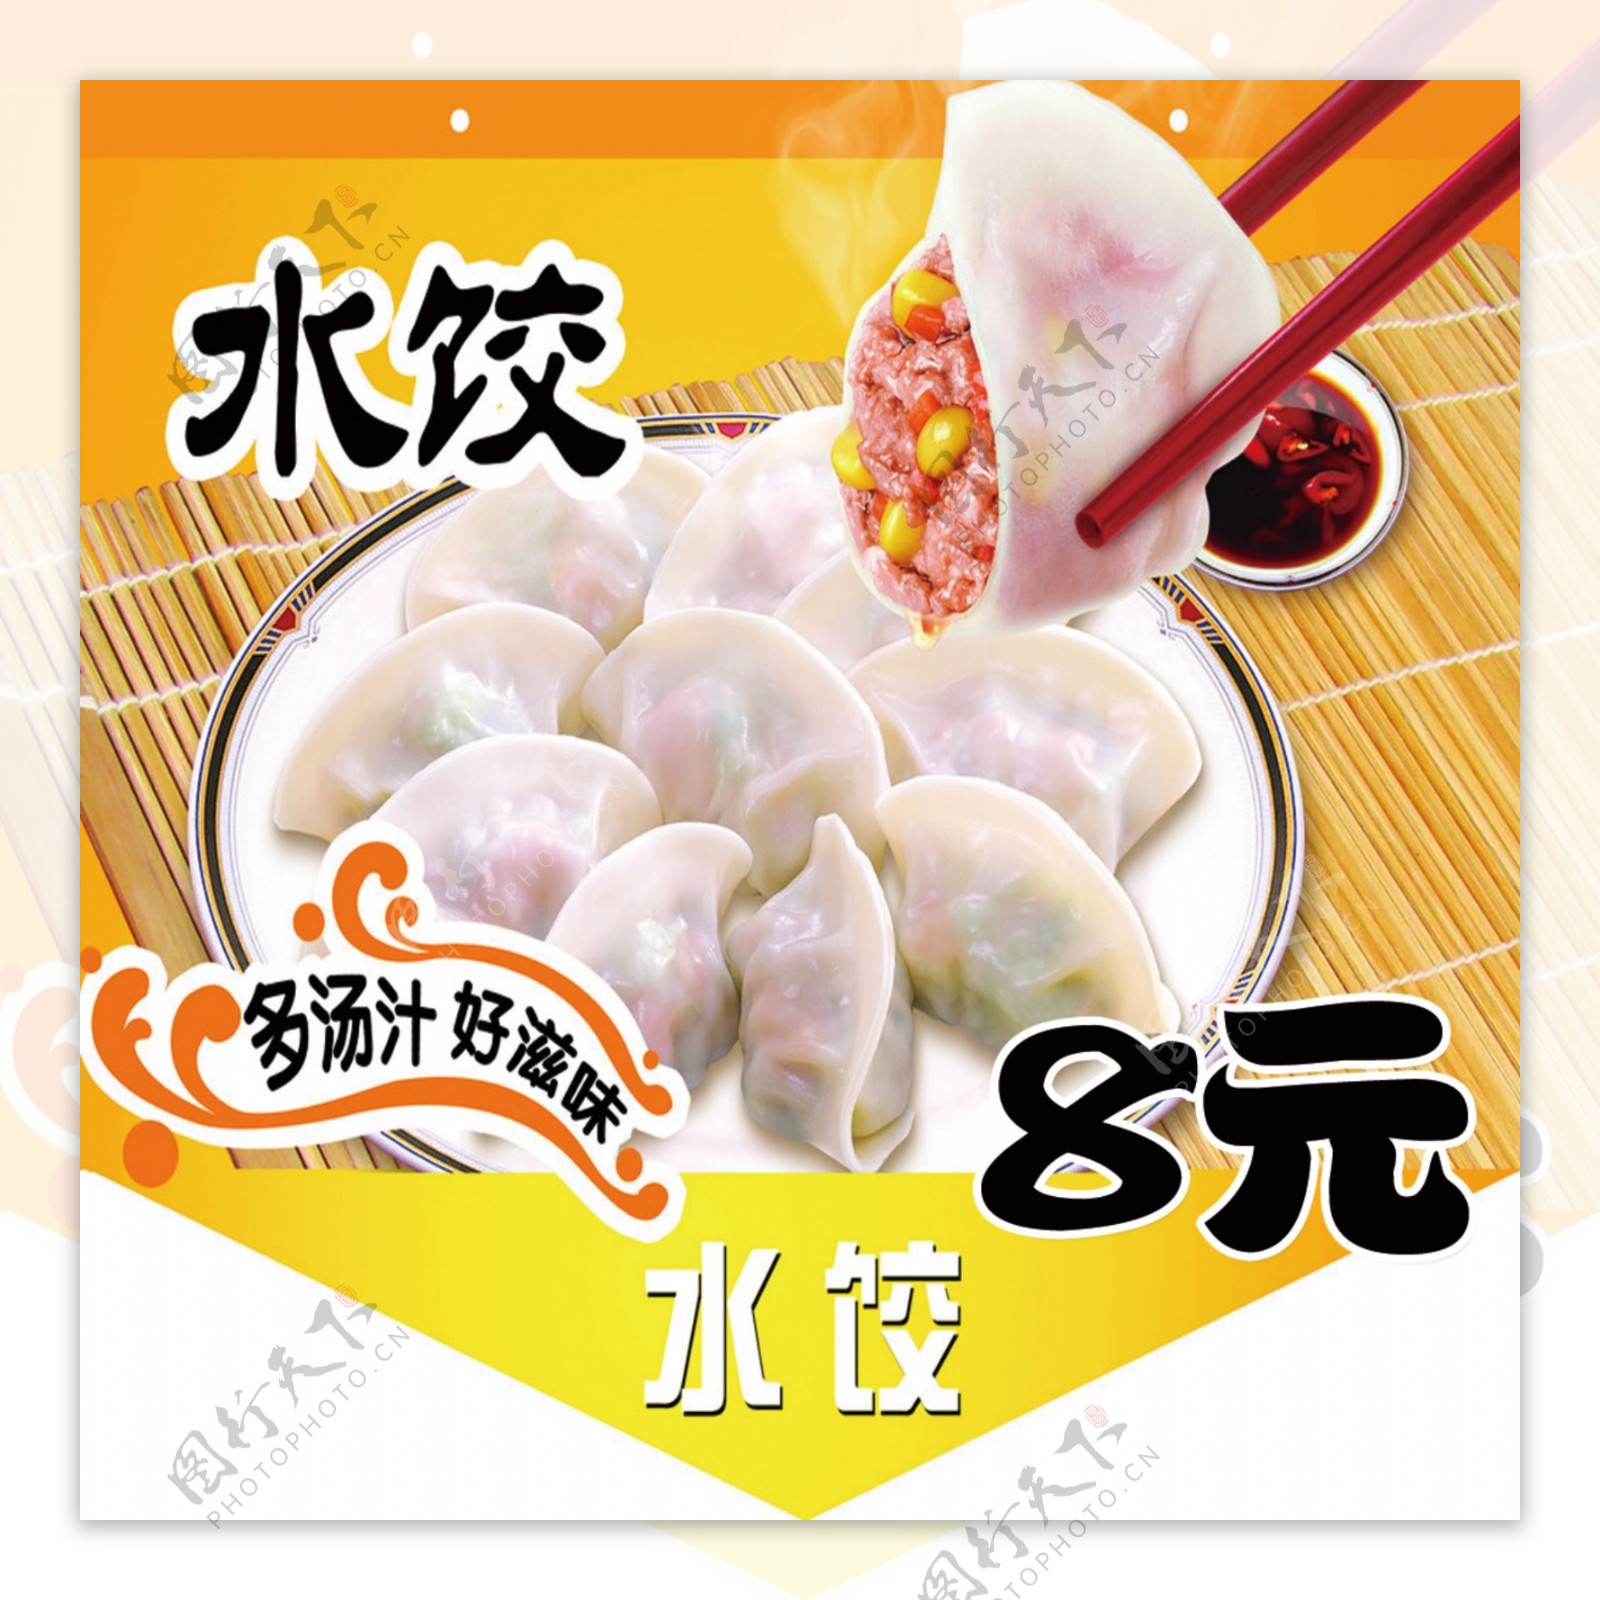 水饺类海报素材PSD模版